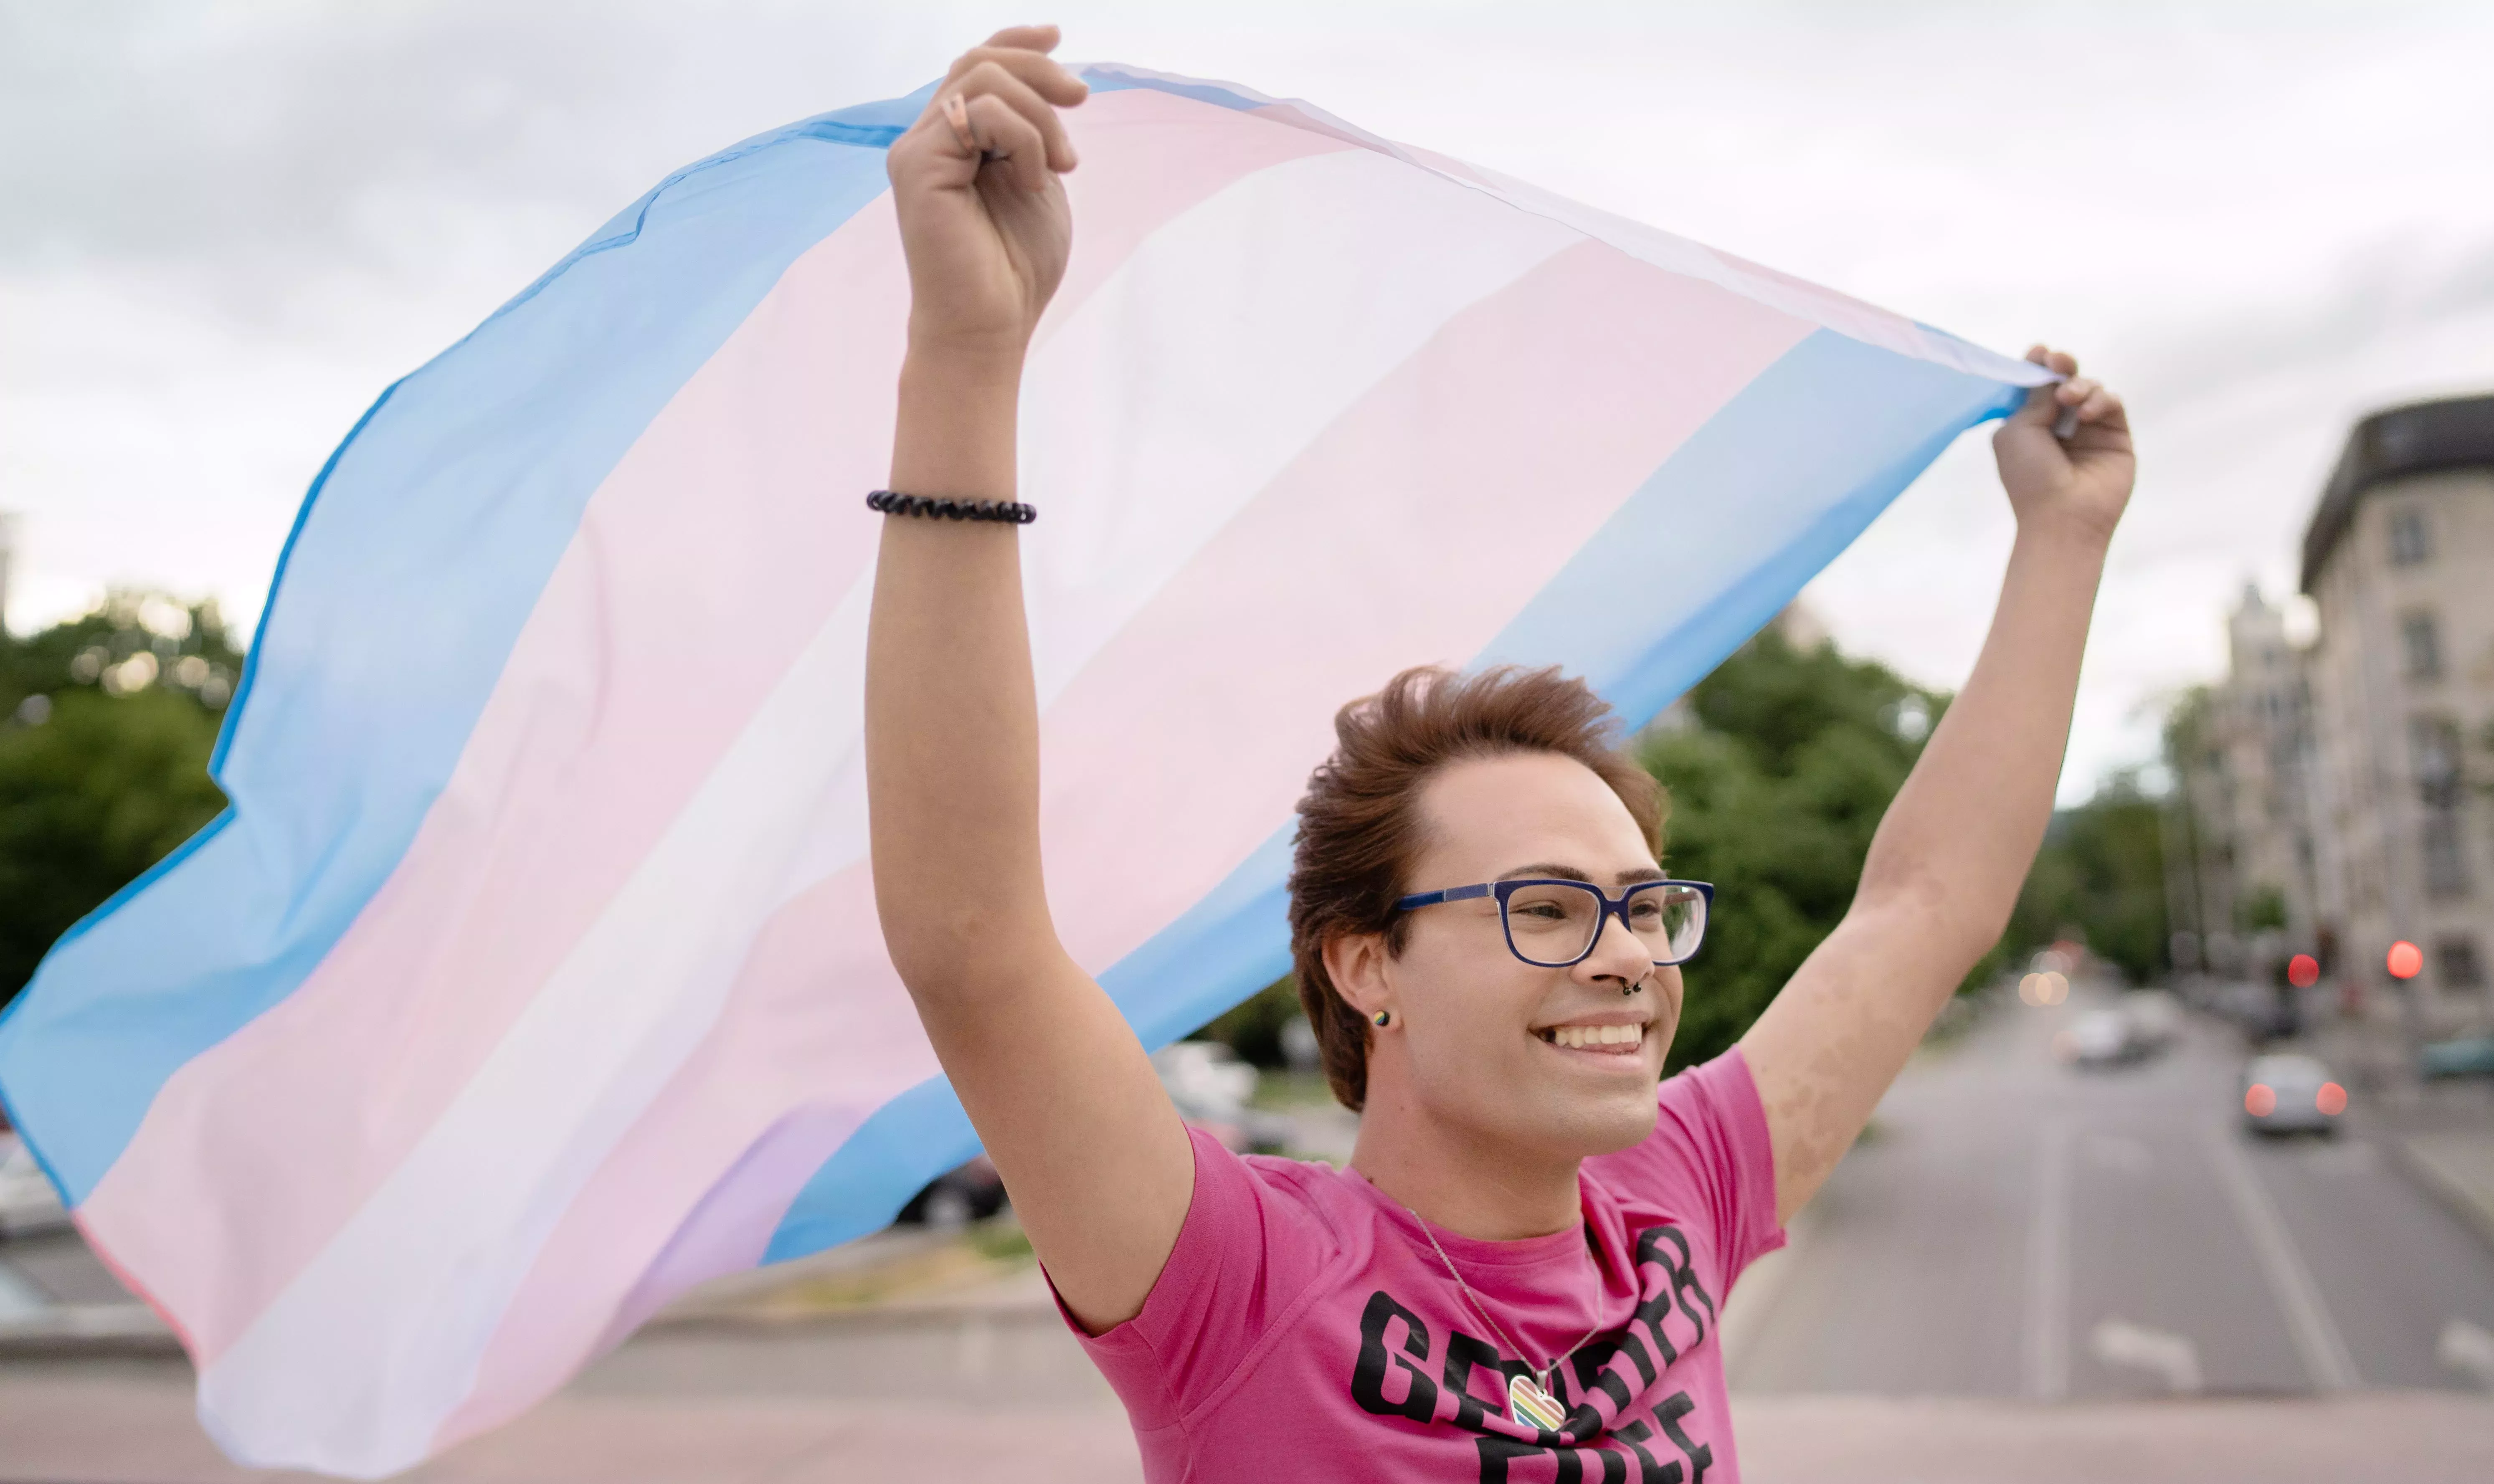 Ithaca, Nueva York, declarada refugio seguro para las personas trans y ofrece protecciones sanitarias